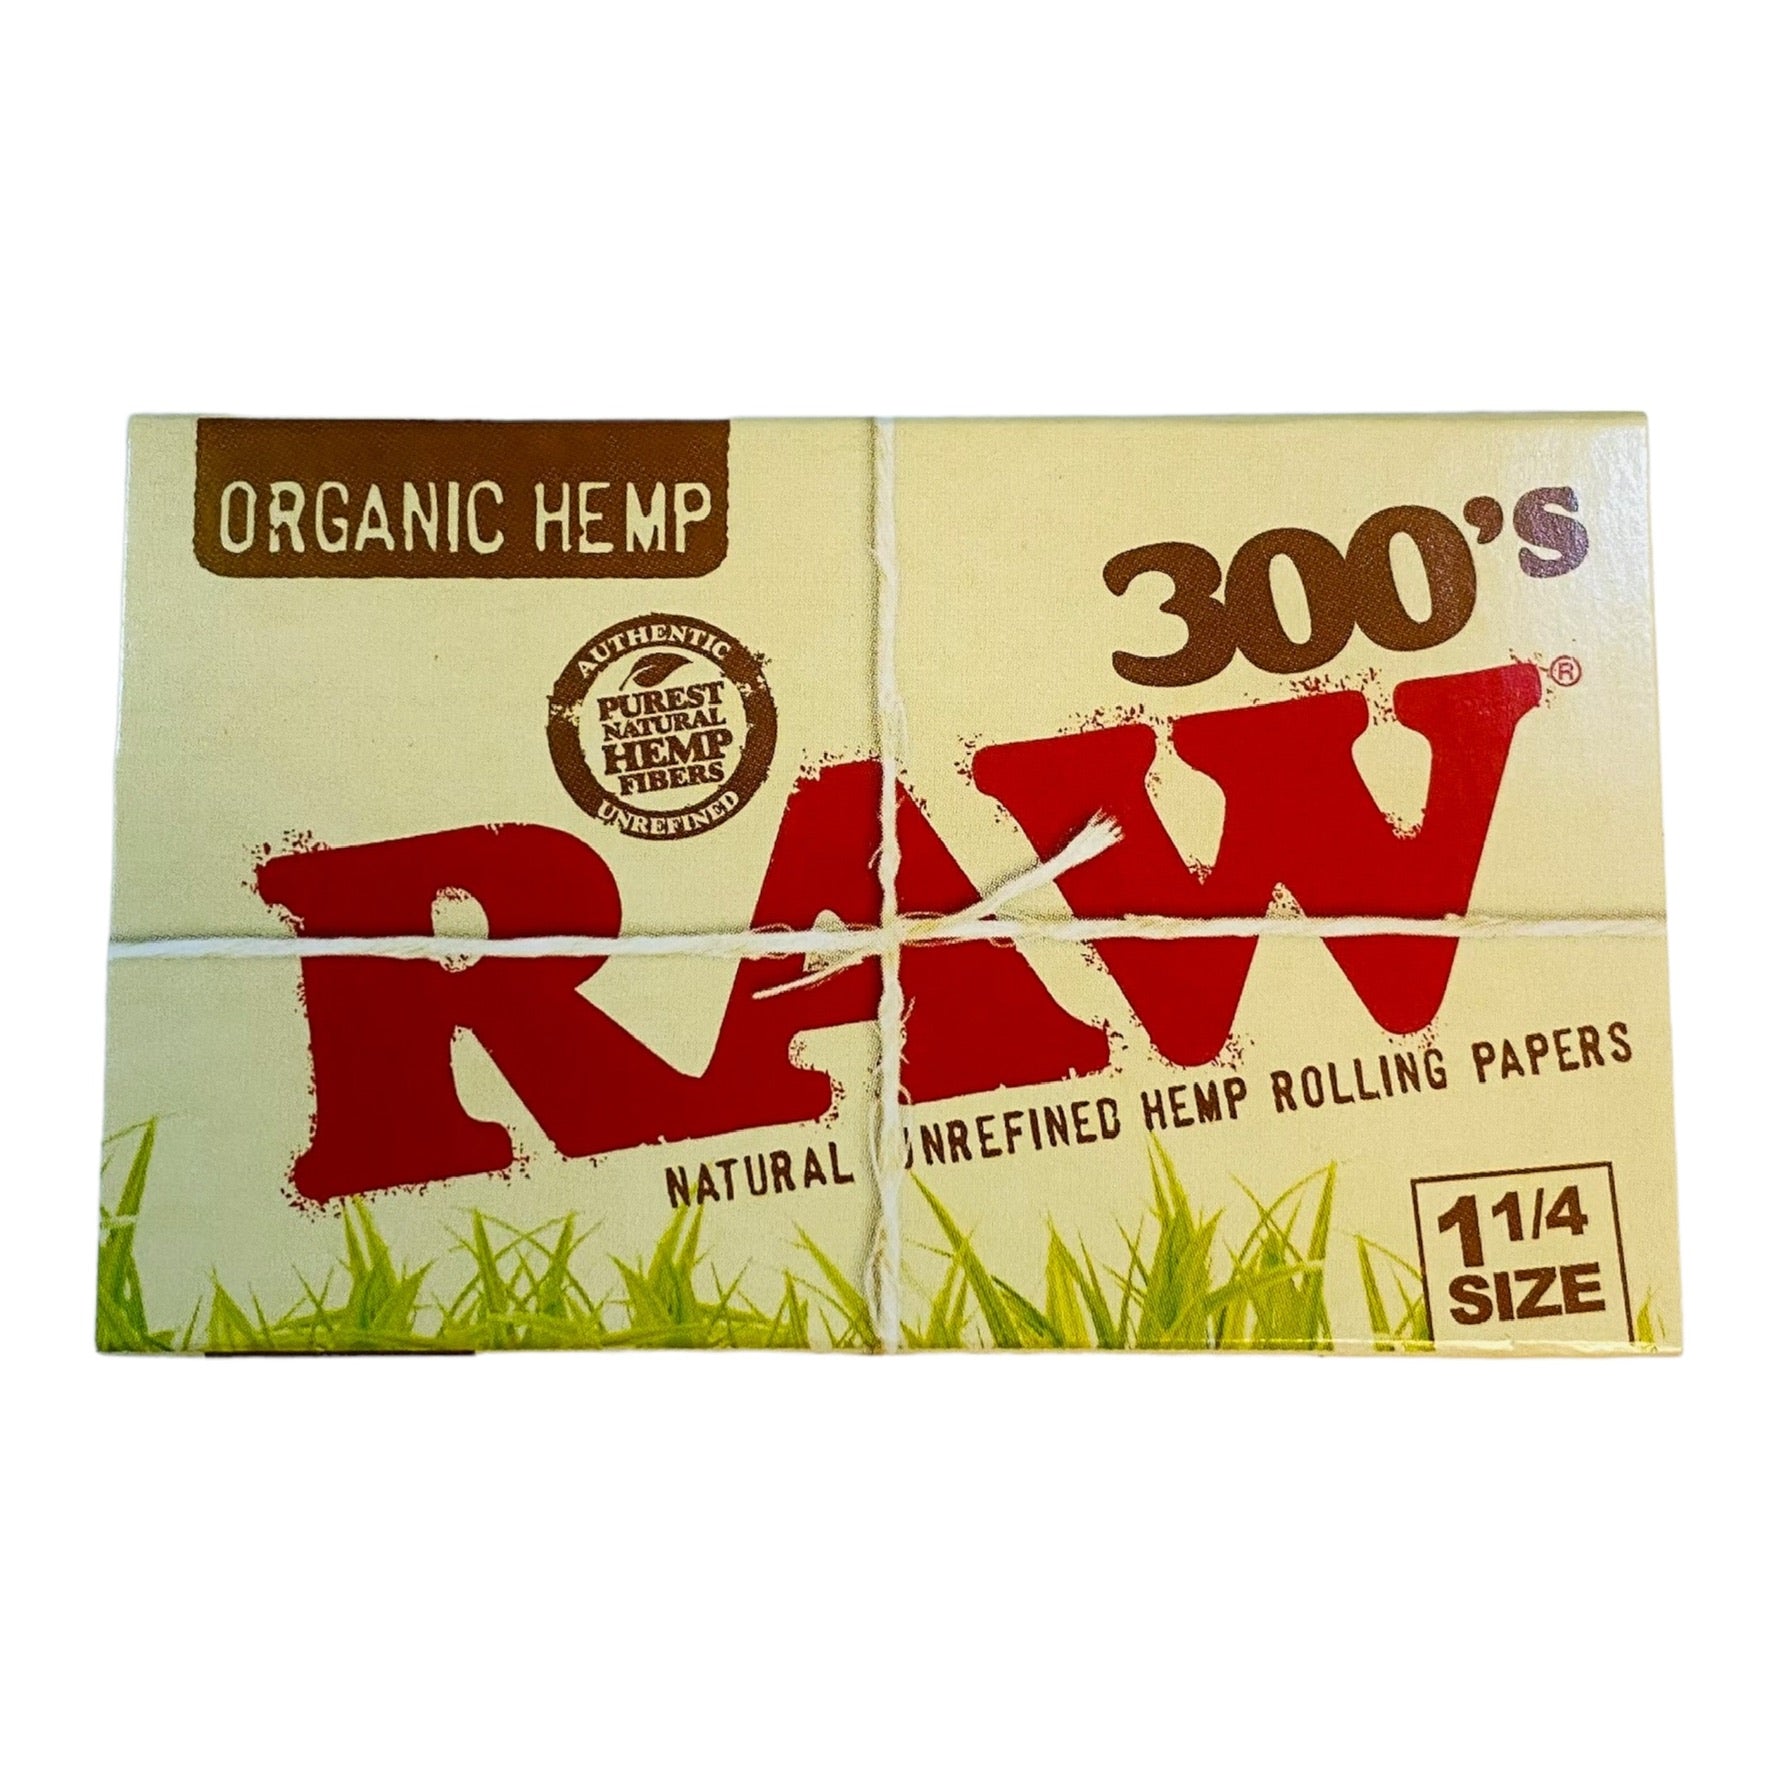 RAW - Organic Hemp "300's" 1.25 Papers - 3 Packs